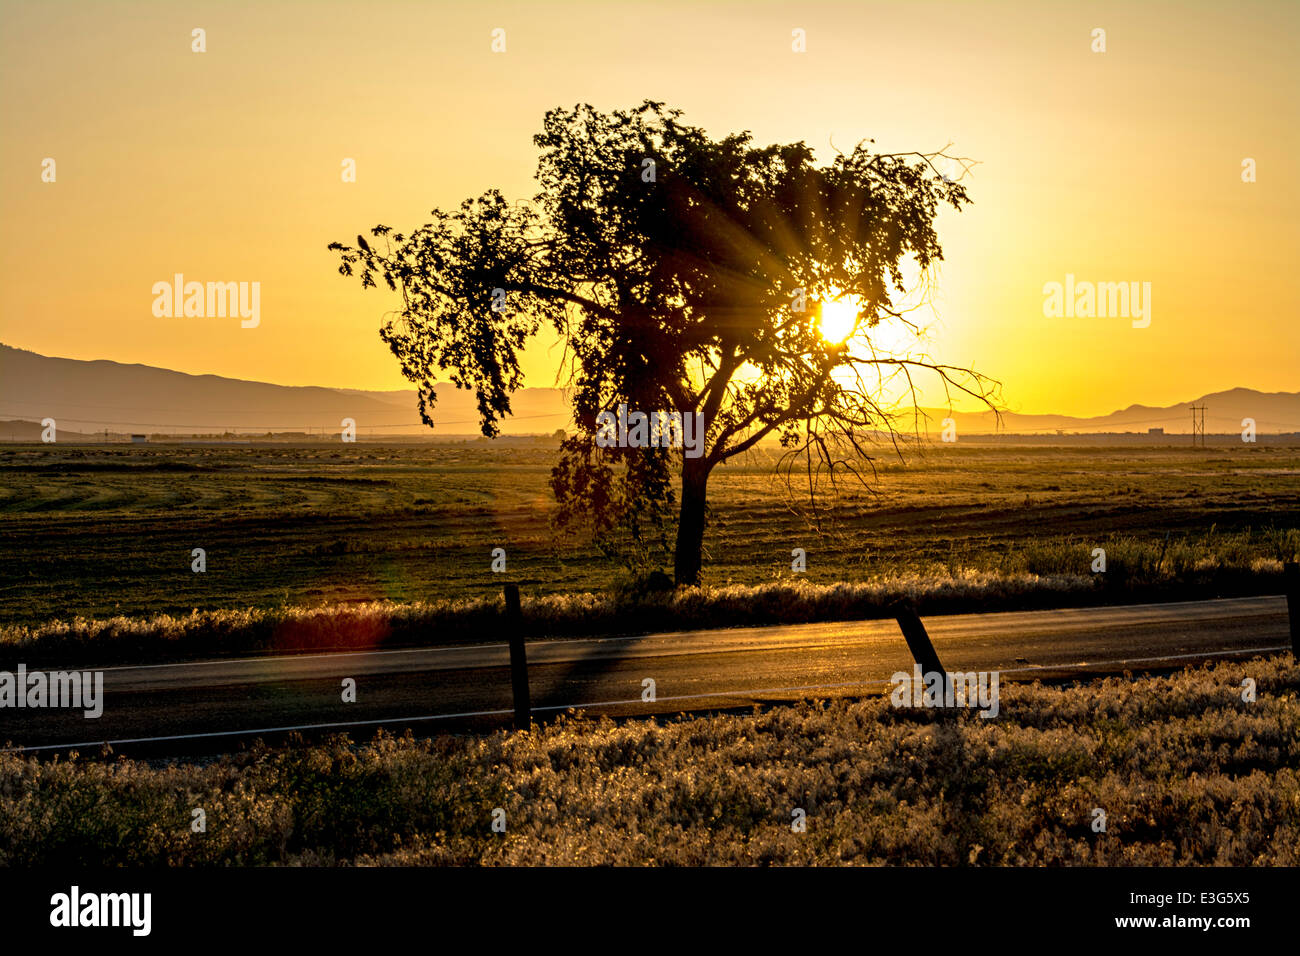 Orange sky with a tree farm field Stock Photo